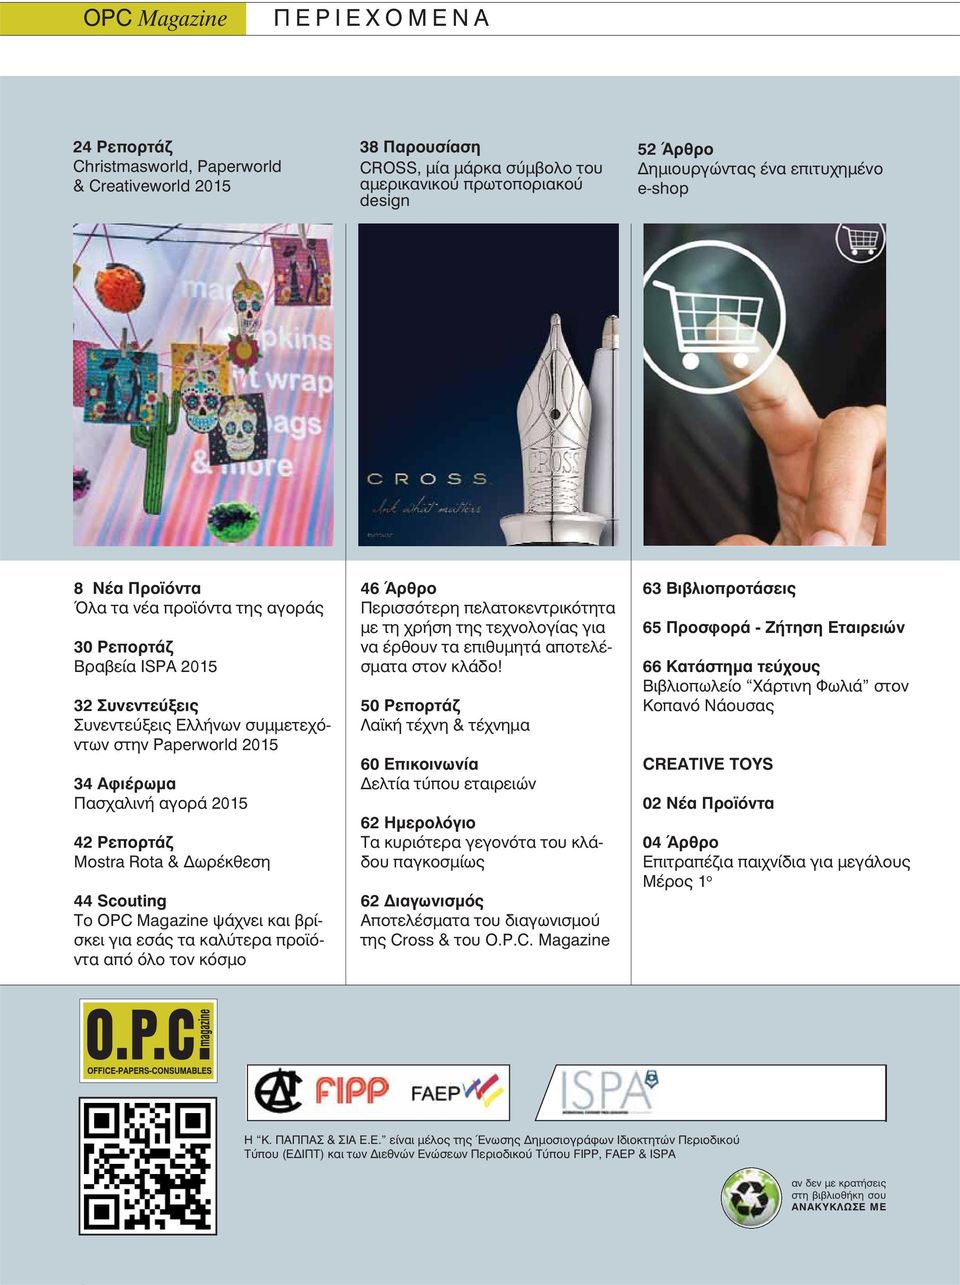 42 Ρεπορτάζ Mostra Rota & Δωρέκθεση 44 Scouting Το OPC Magazine ψάχνει και βρίσκει για εσάς τα καλύτερα προϊόντα από όλο τον κόσμο 46 Άρθρο Περισσότερη πελατοκεντρικότητα με τη χρήση της τεχνολογίας